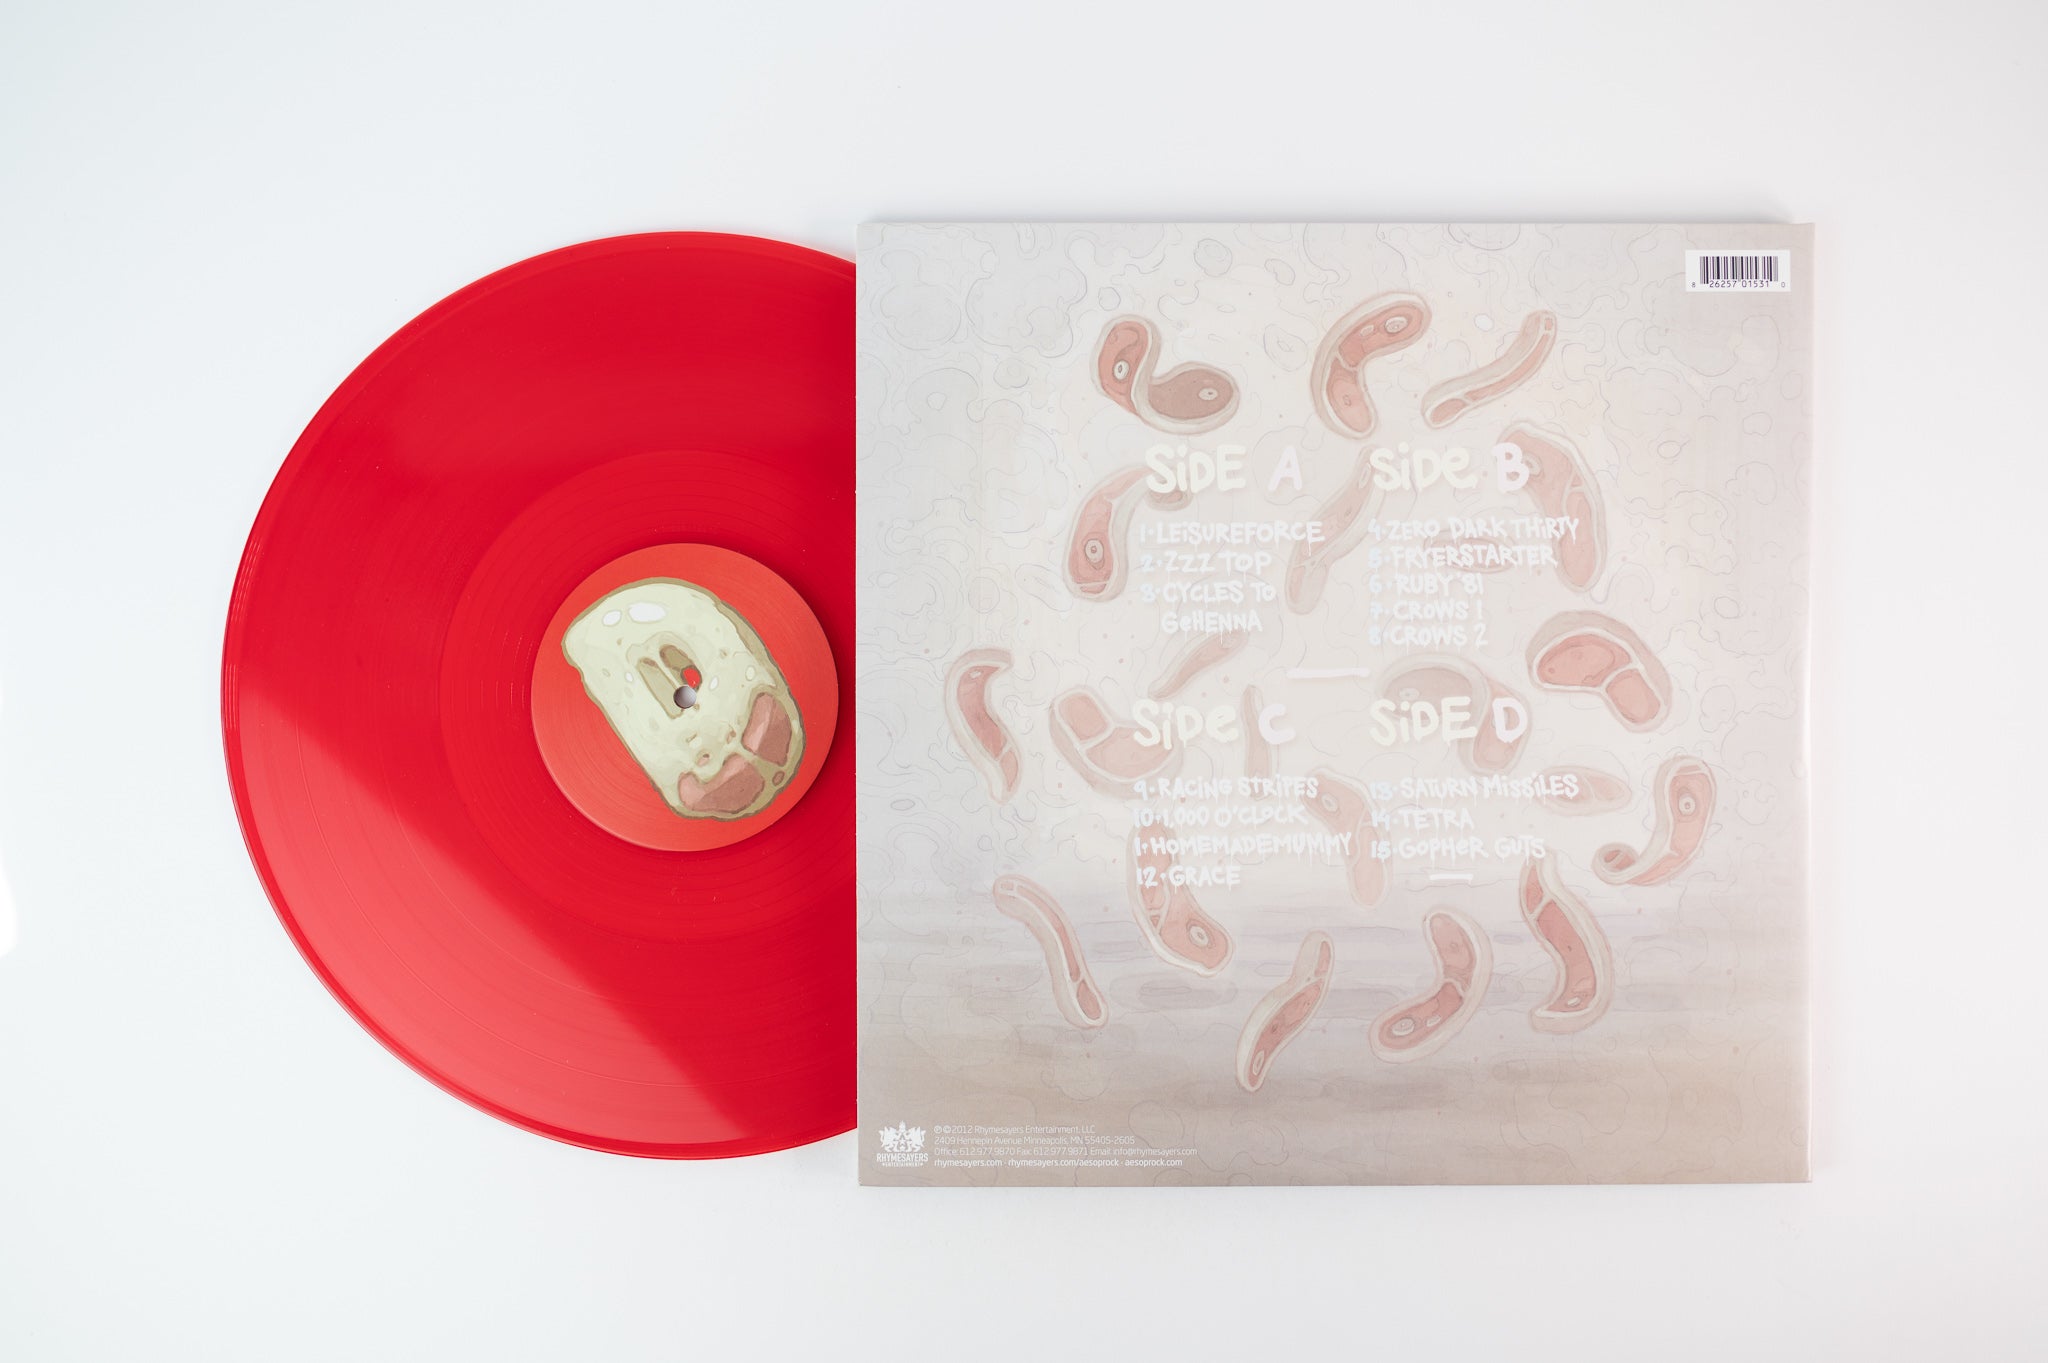 Aesop Rock - Skelethon on Rhymesayers Red Vinyl Reissue